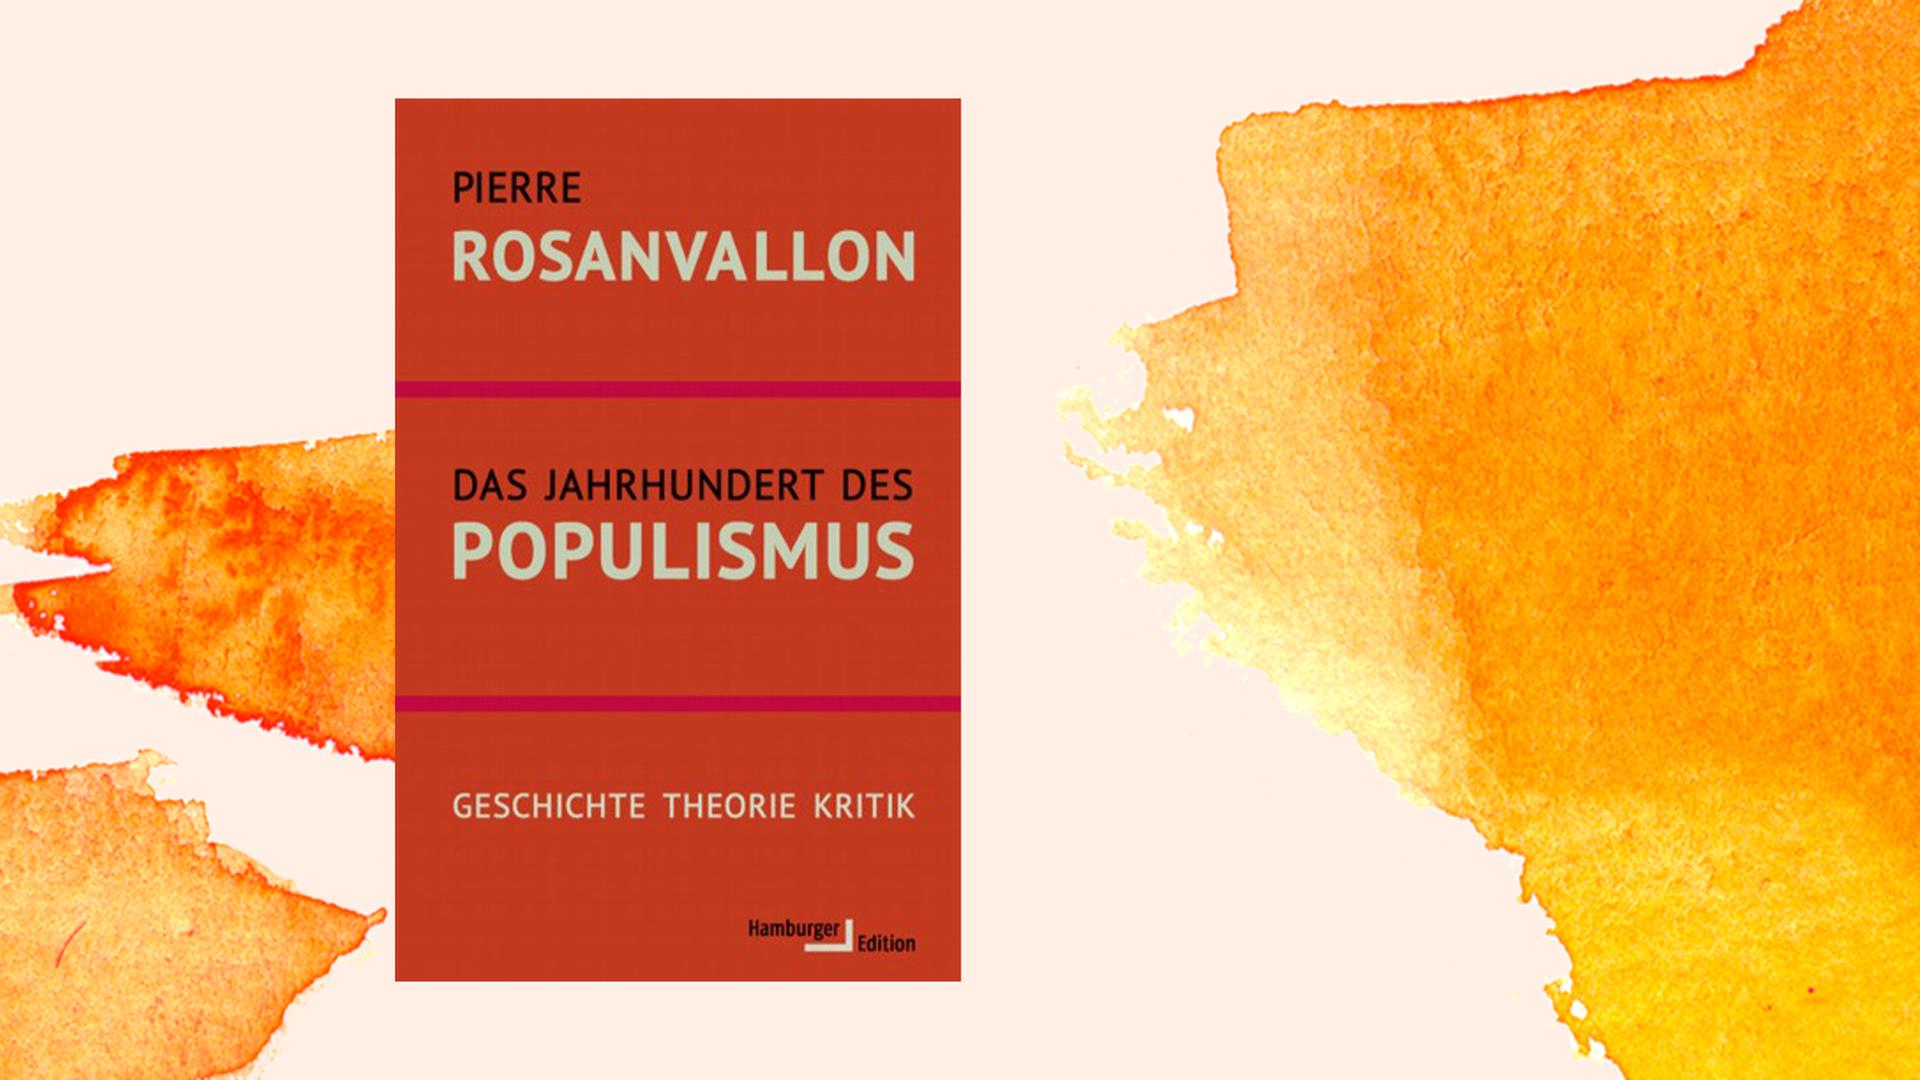 Buchcover von Pierre Rosanvallon: "Das Jahrhundert des Populismus", Hamburger Edition, 2020.